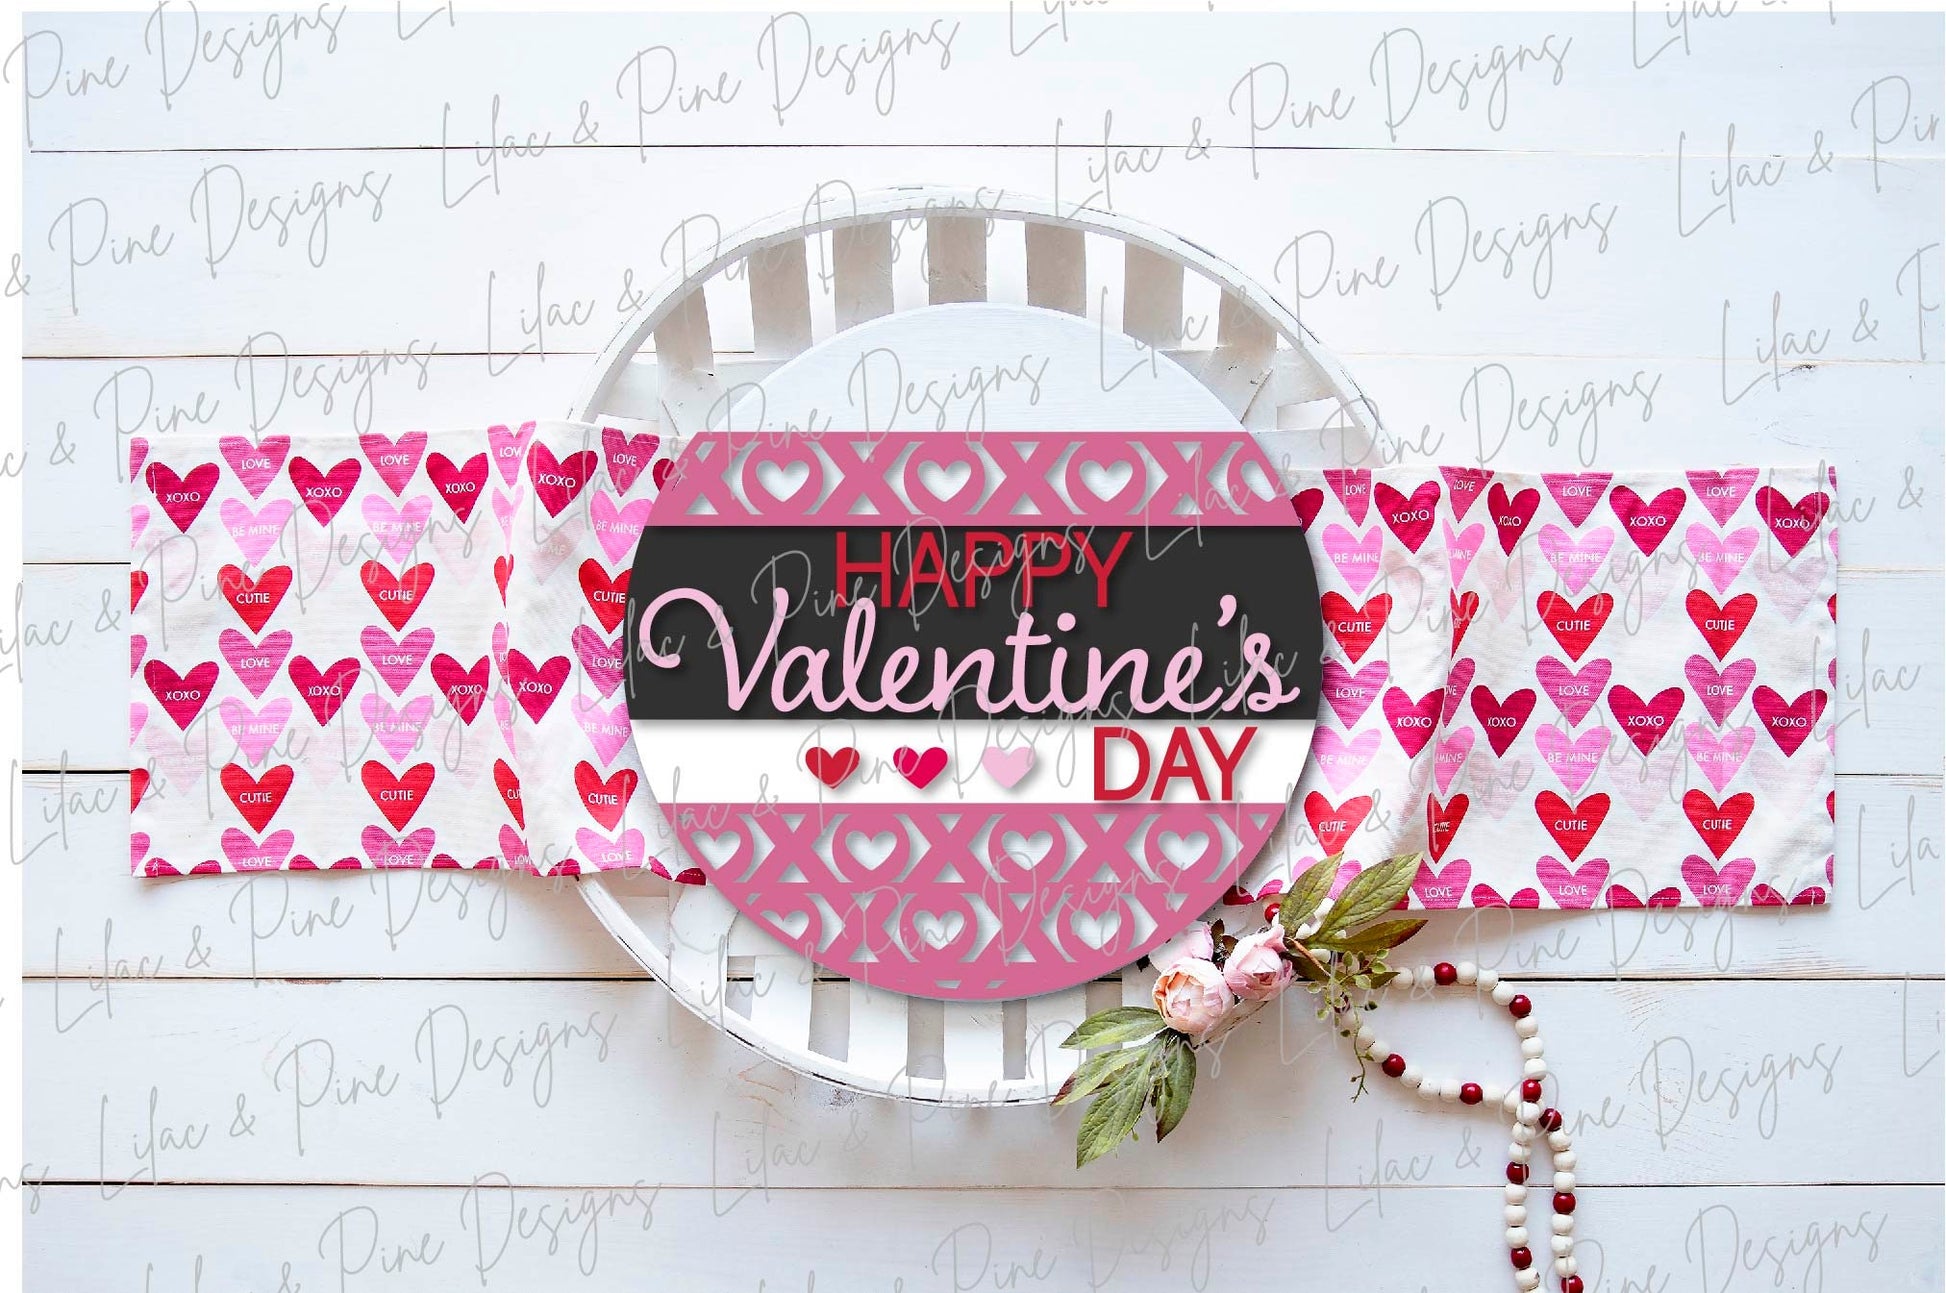 Happy Valentines Day SVG, Valentine door hanger, XOXO Valentine sign svg, XOXO door round, Valentine decor, Glowforge Svg, laser cut file